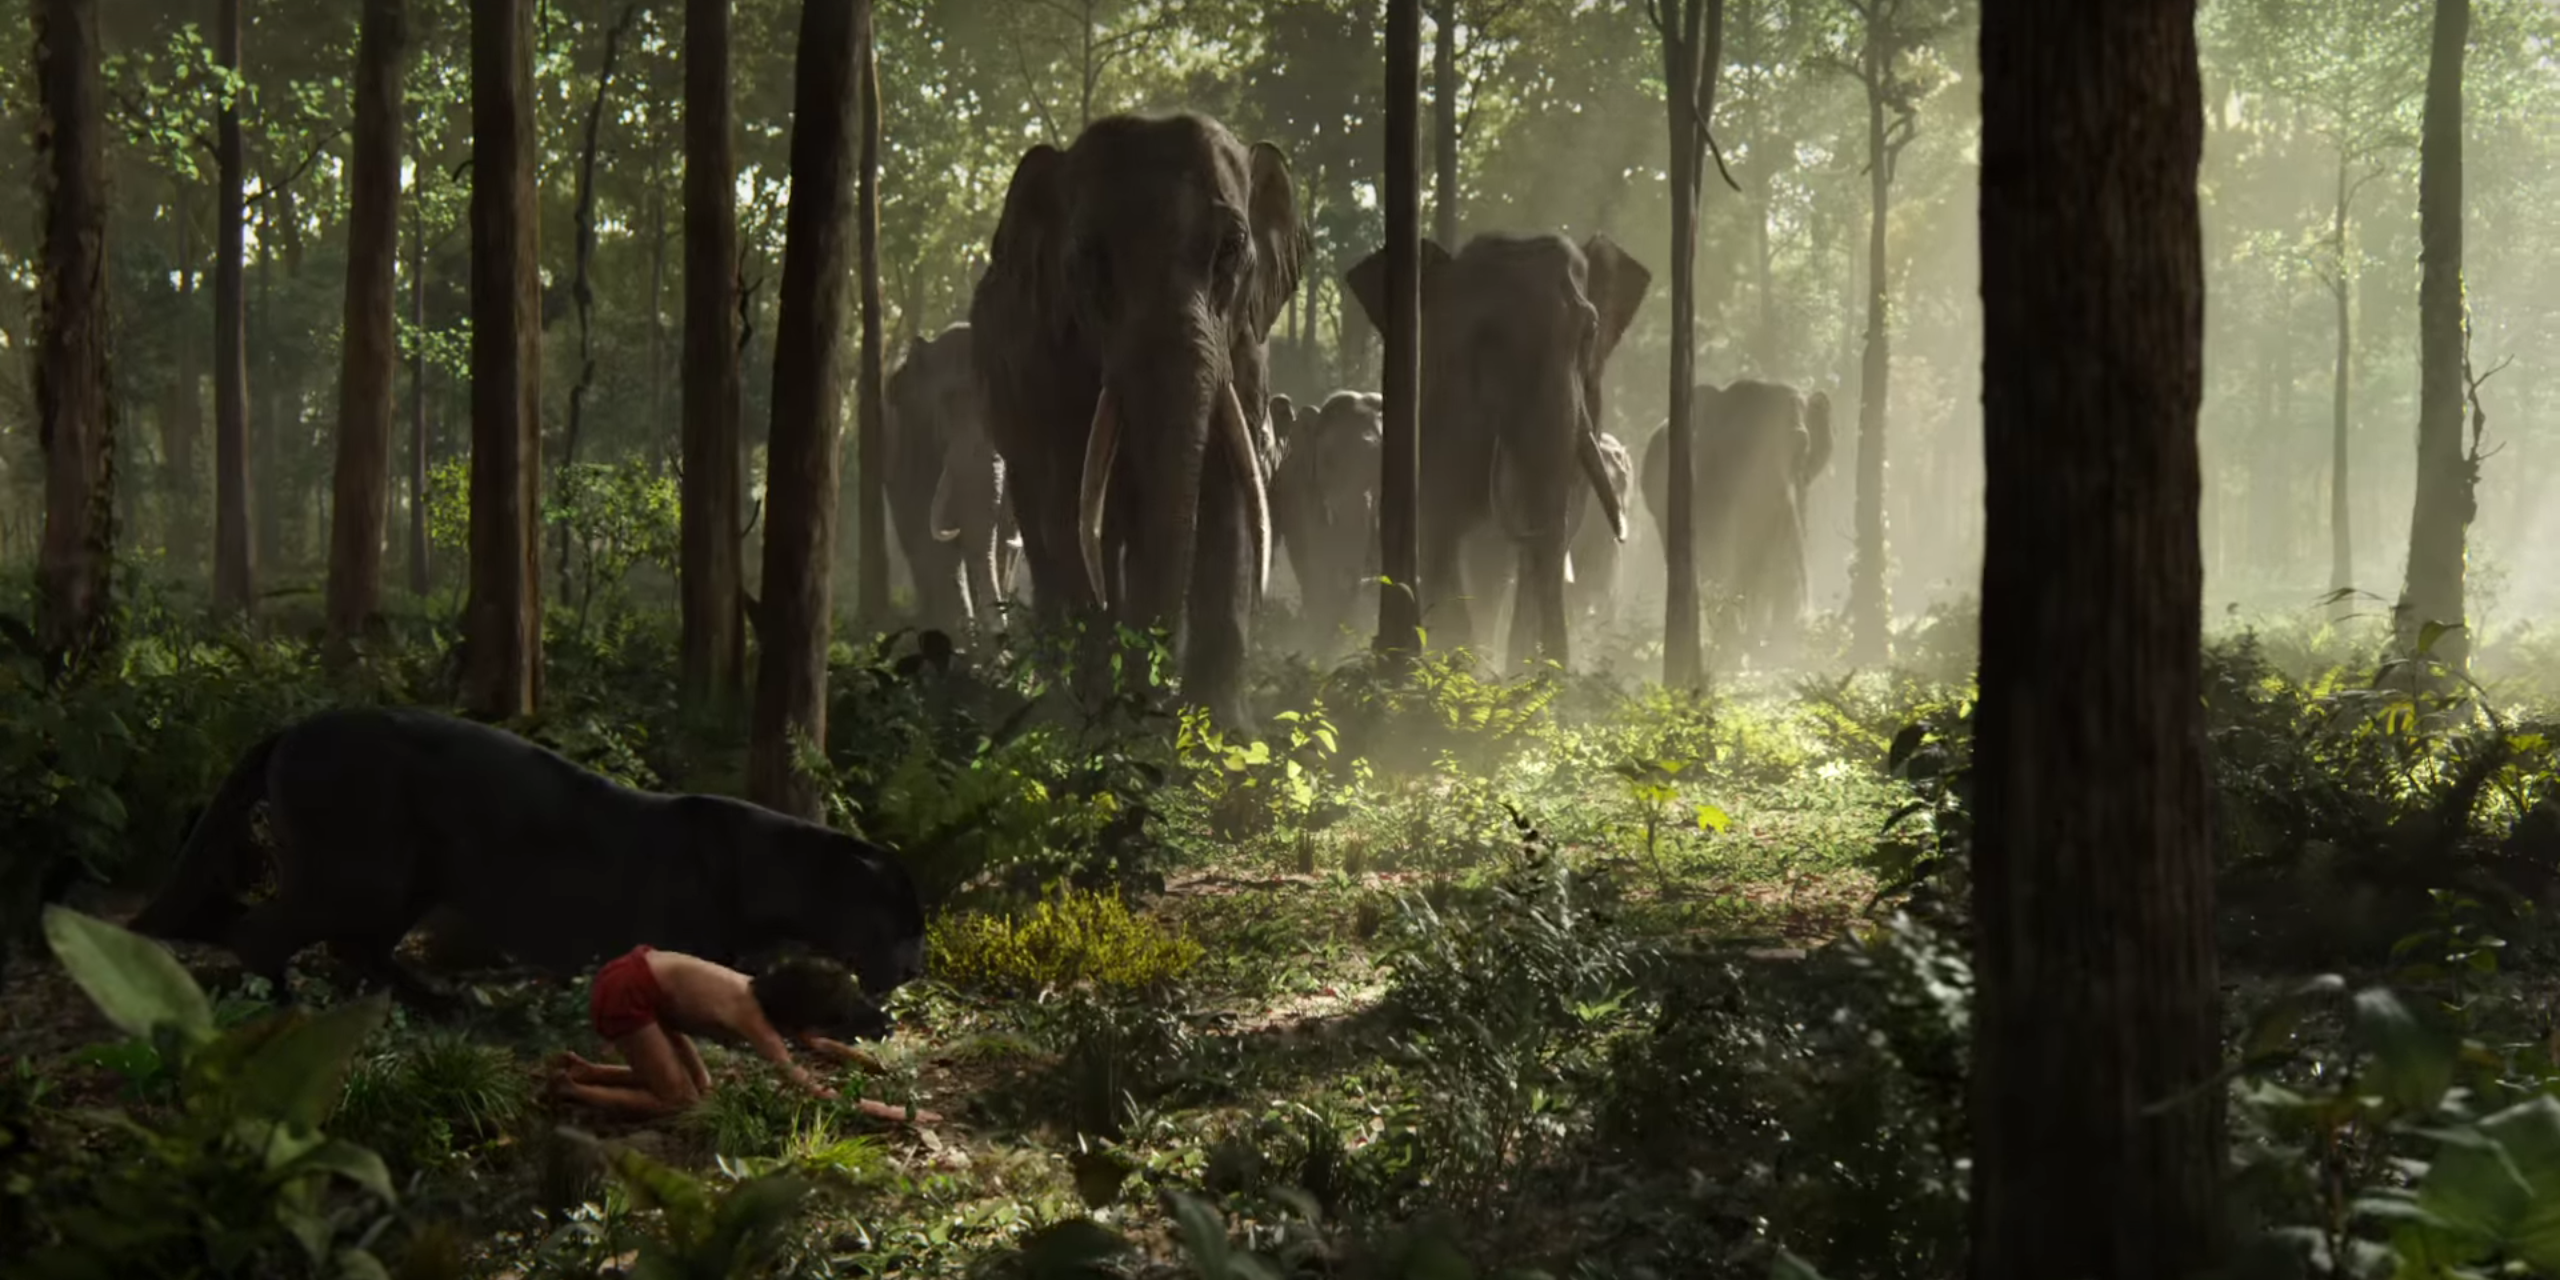 Джунглях живут люди. Маугли книга джунглей 2016. Книга джунглей 2016 слоны.